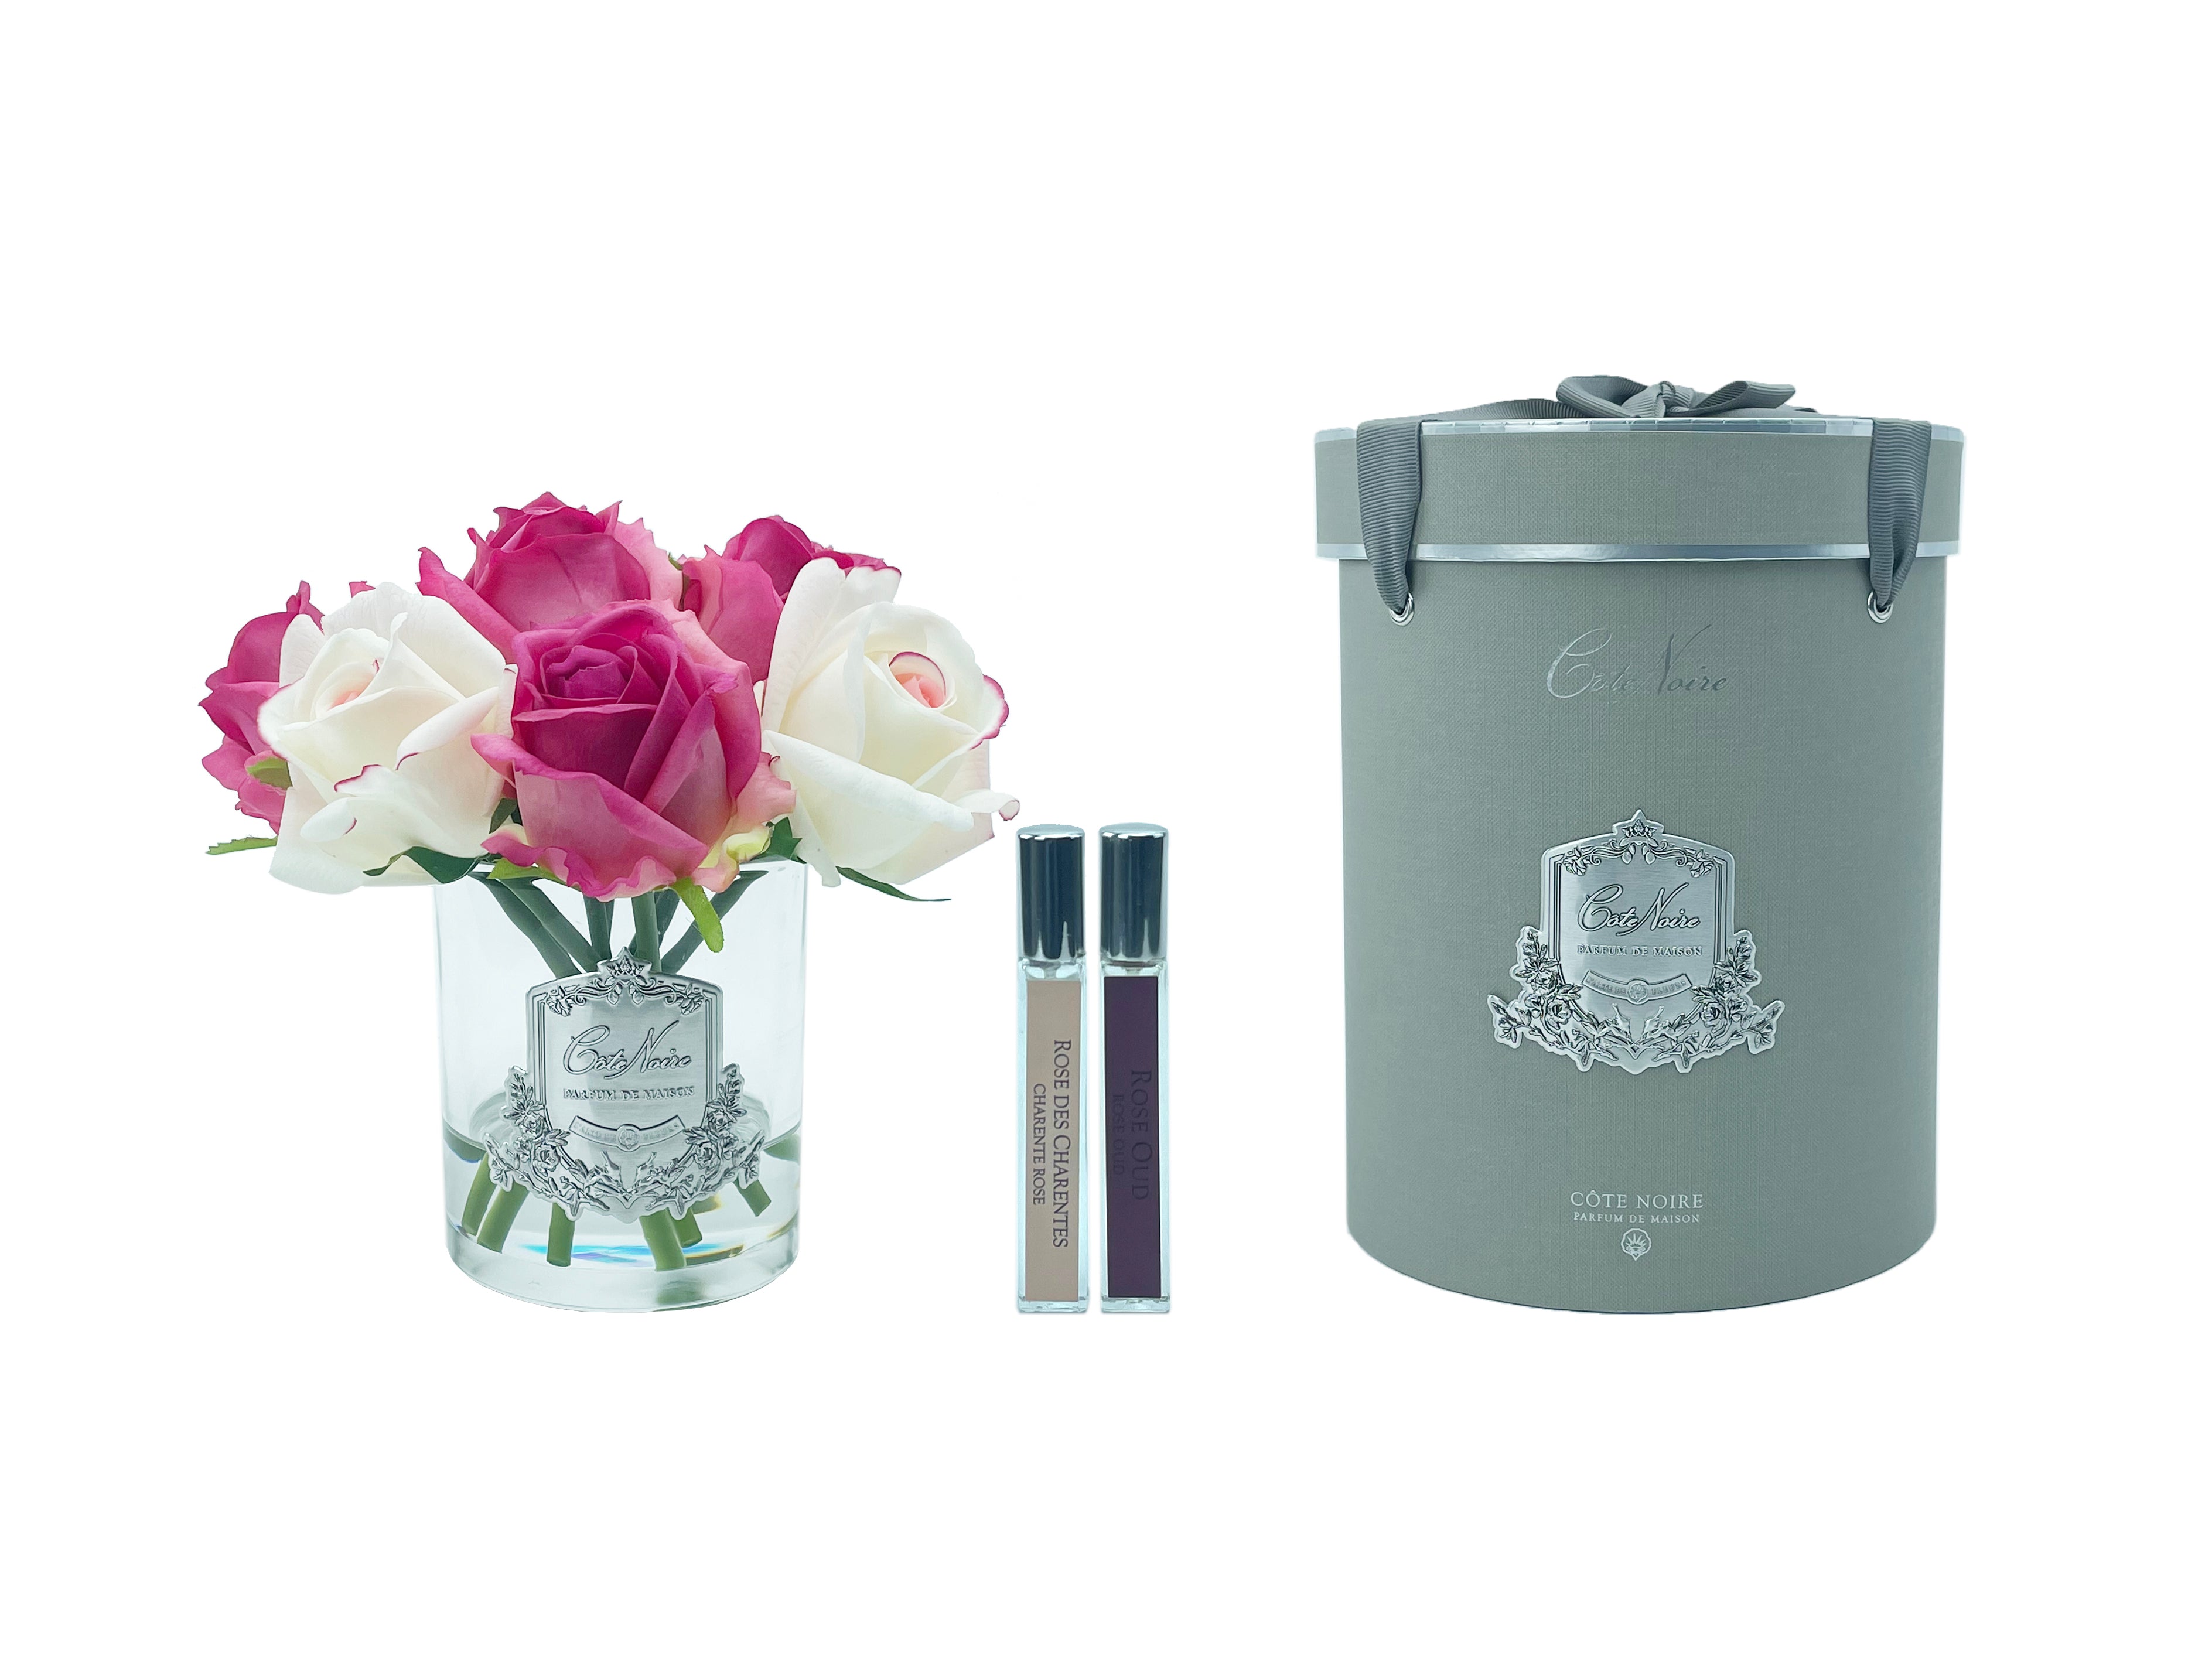 lila und weisse rosen in durchsichtigem glas mit silberner aufschrift, daneben zwei parfumsprays und runde geschenkbox.